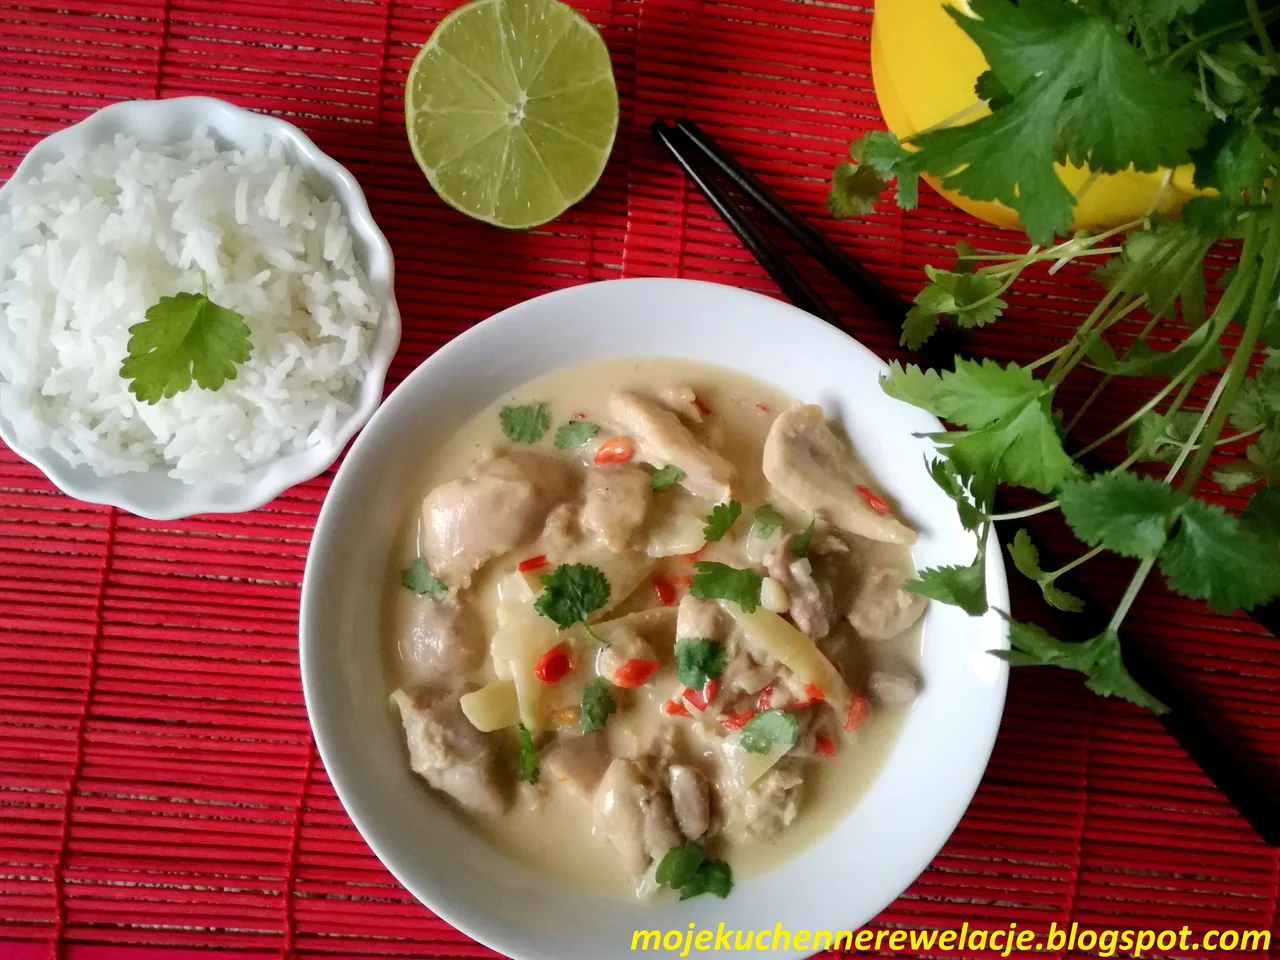 Tajskie curry z kurczaka - 486 kcal